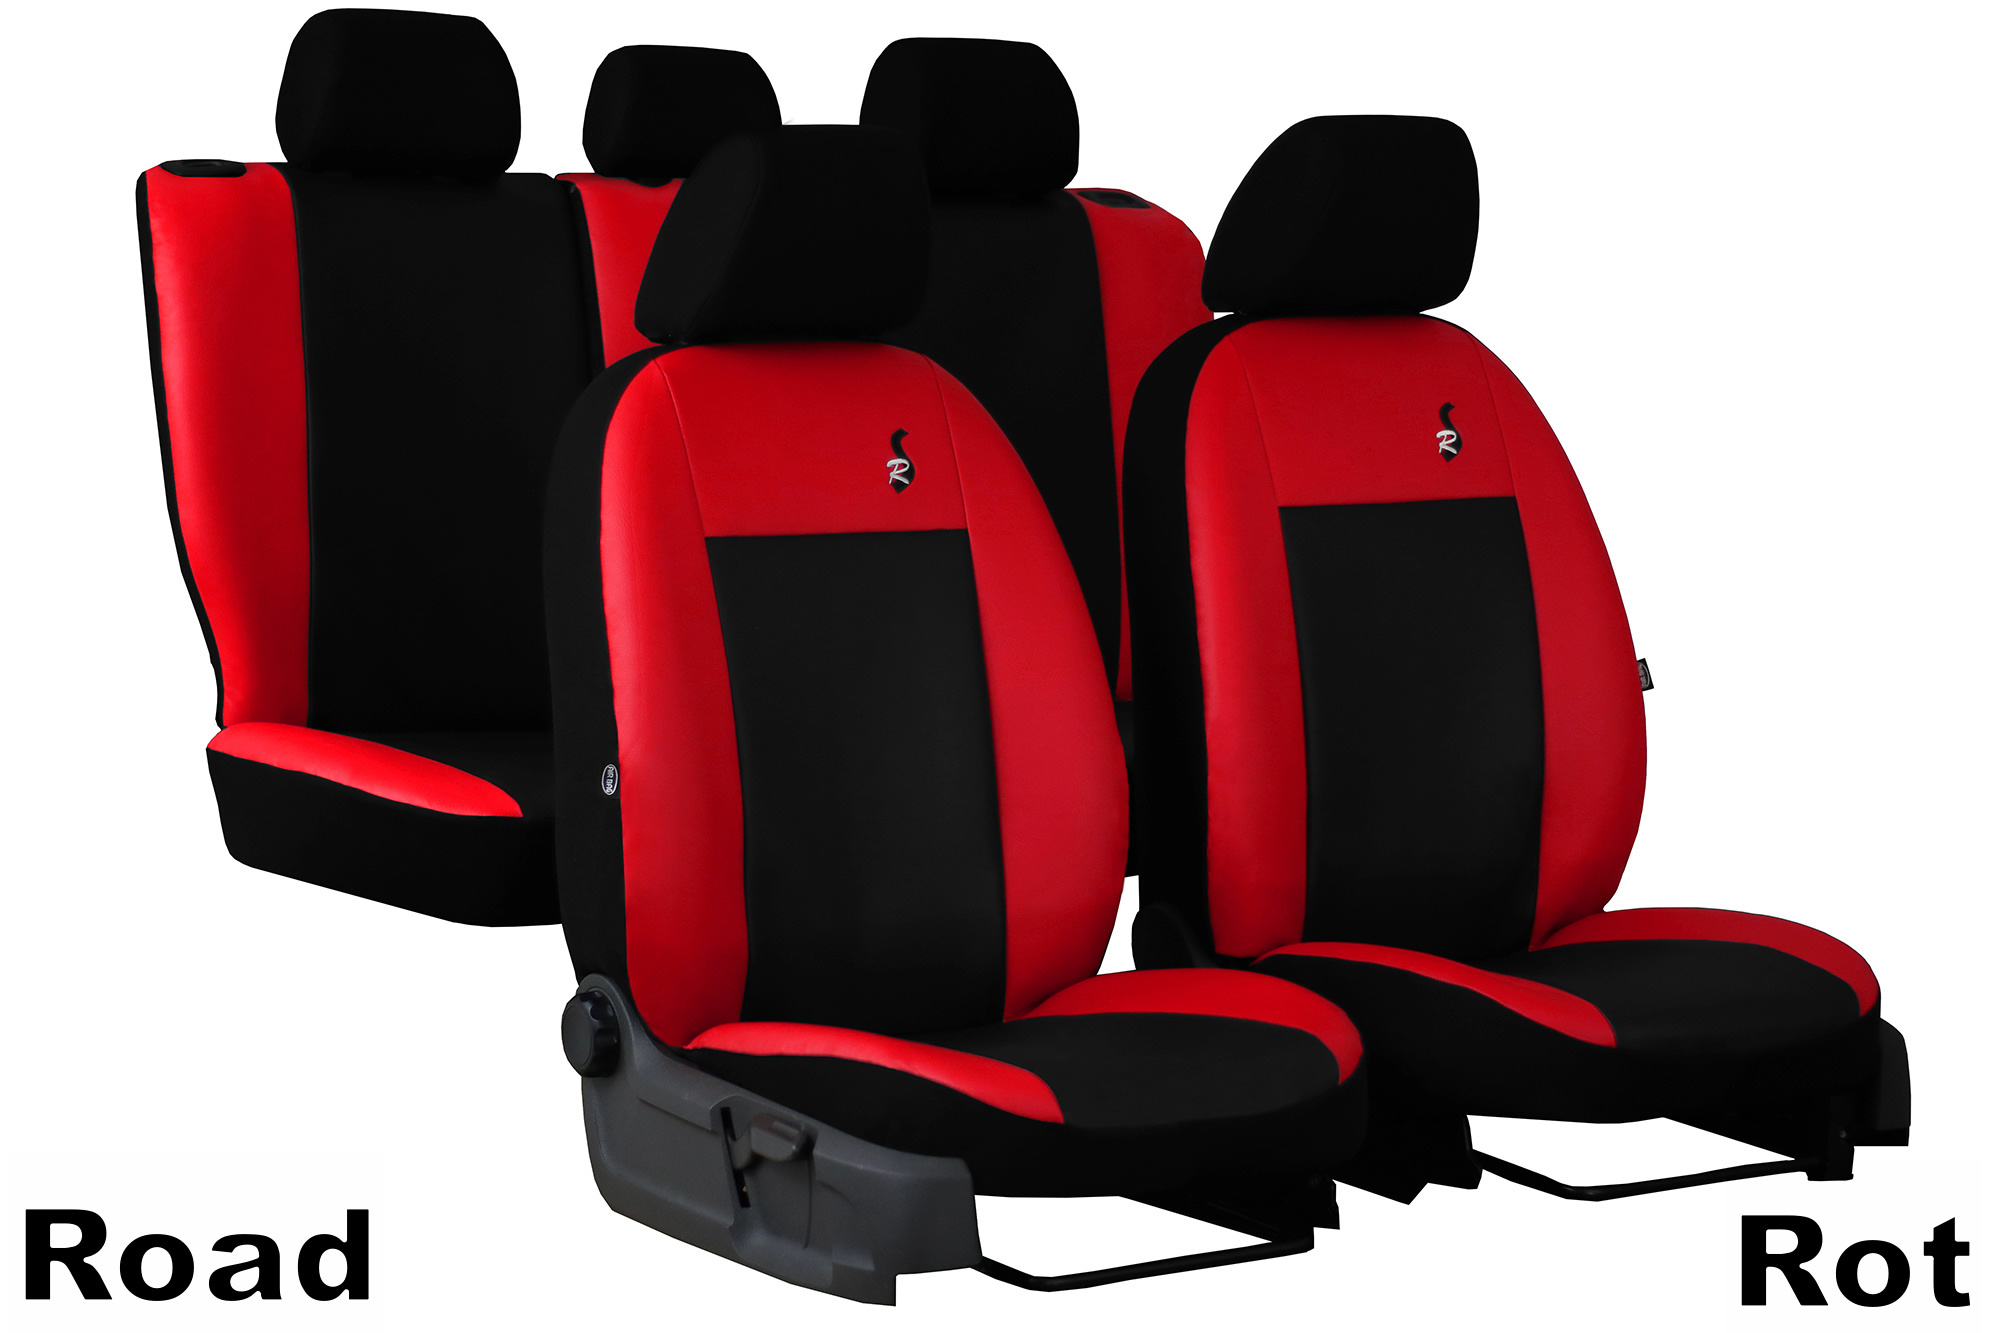 AUDI A3 8P Maßgefertigte Kunstleder Sitzbezüge Schonbezüge Autositzbezüg  Schwarz